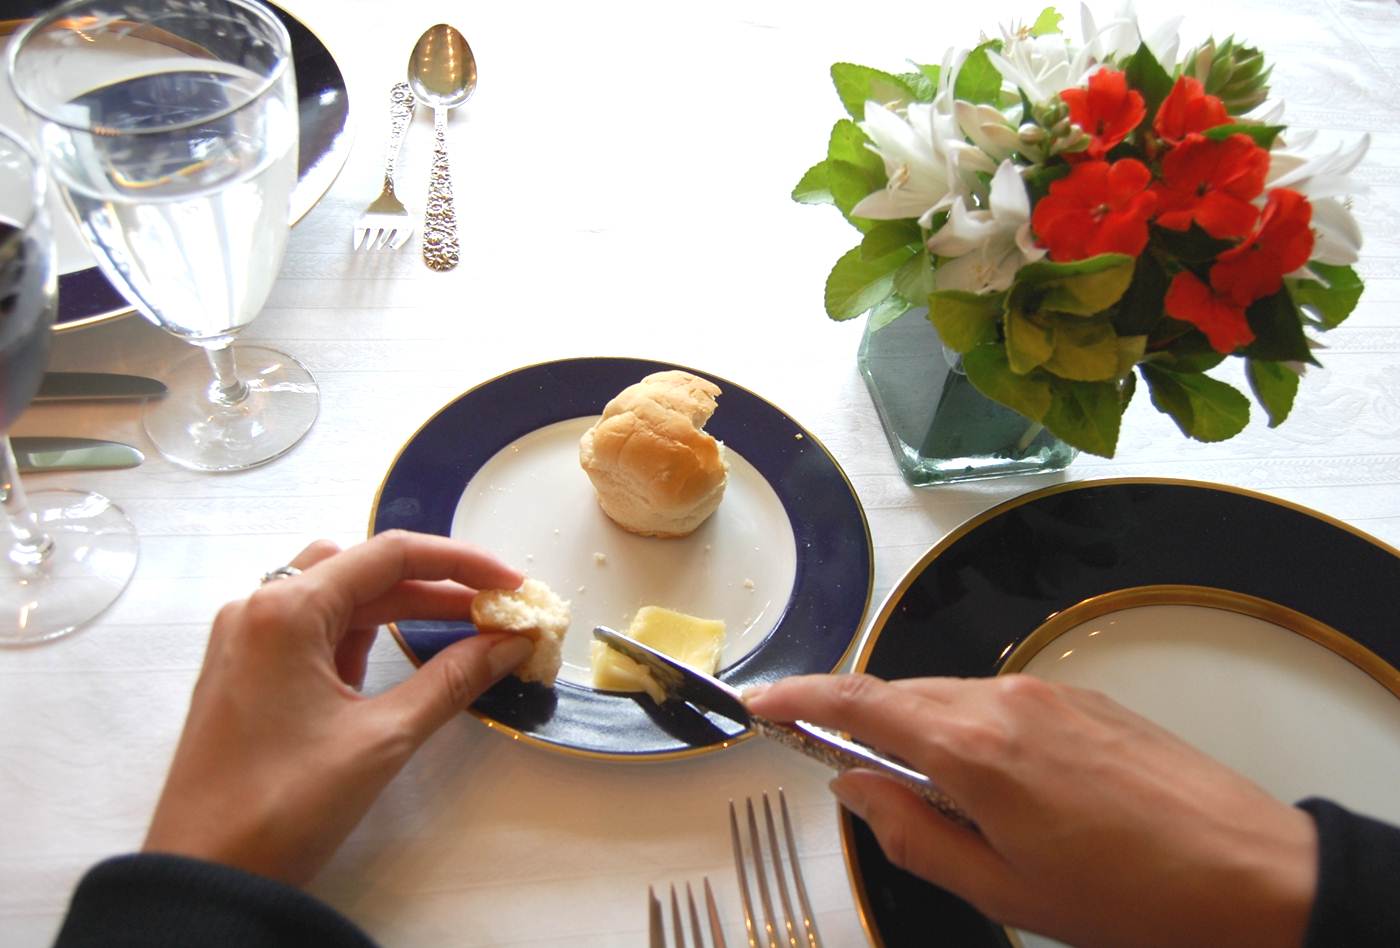 numa mesa de almoço, uma mão segura uma faca e outra segura um pedaço de pão, que está num pratinho. ao lado direito tem um pequeno vaso de flores